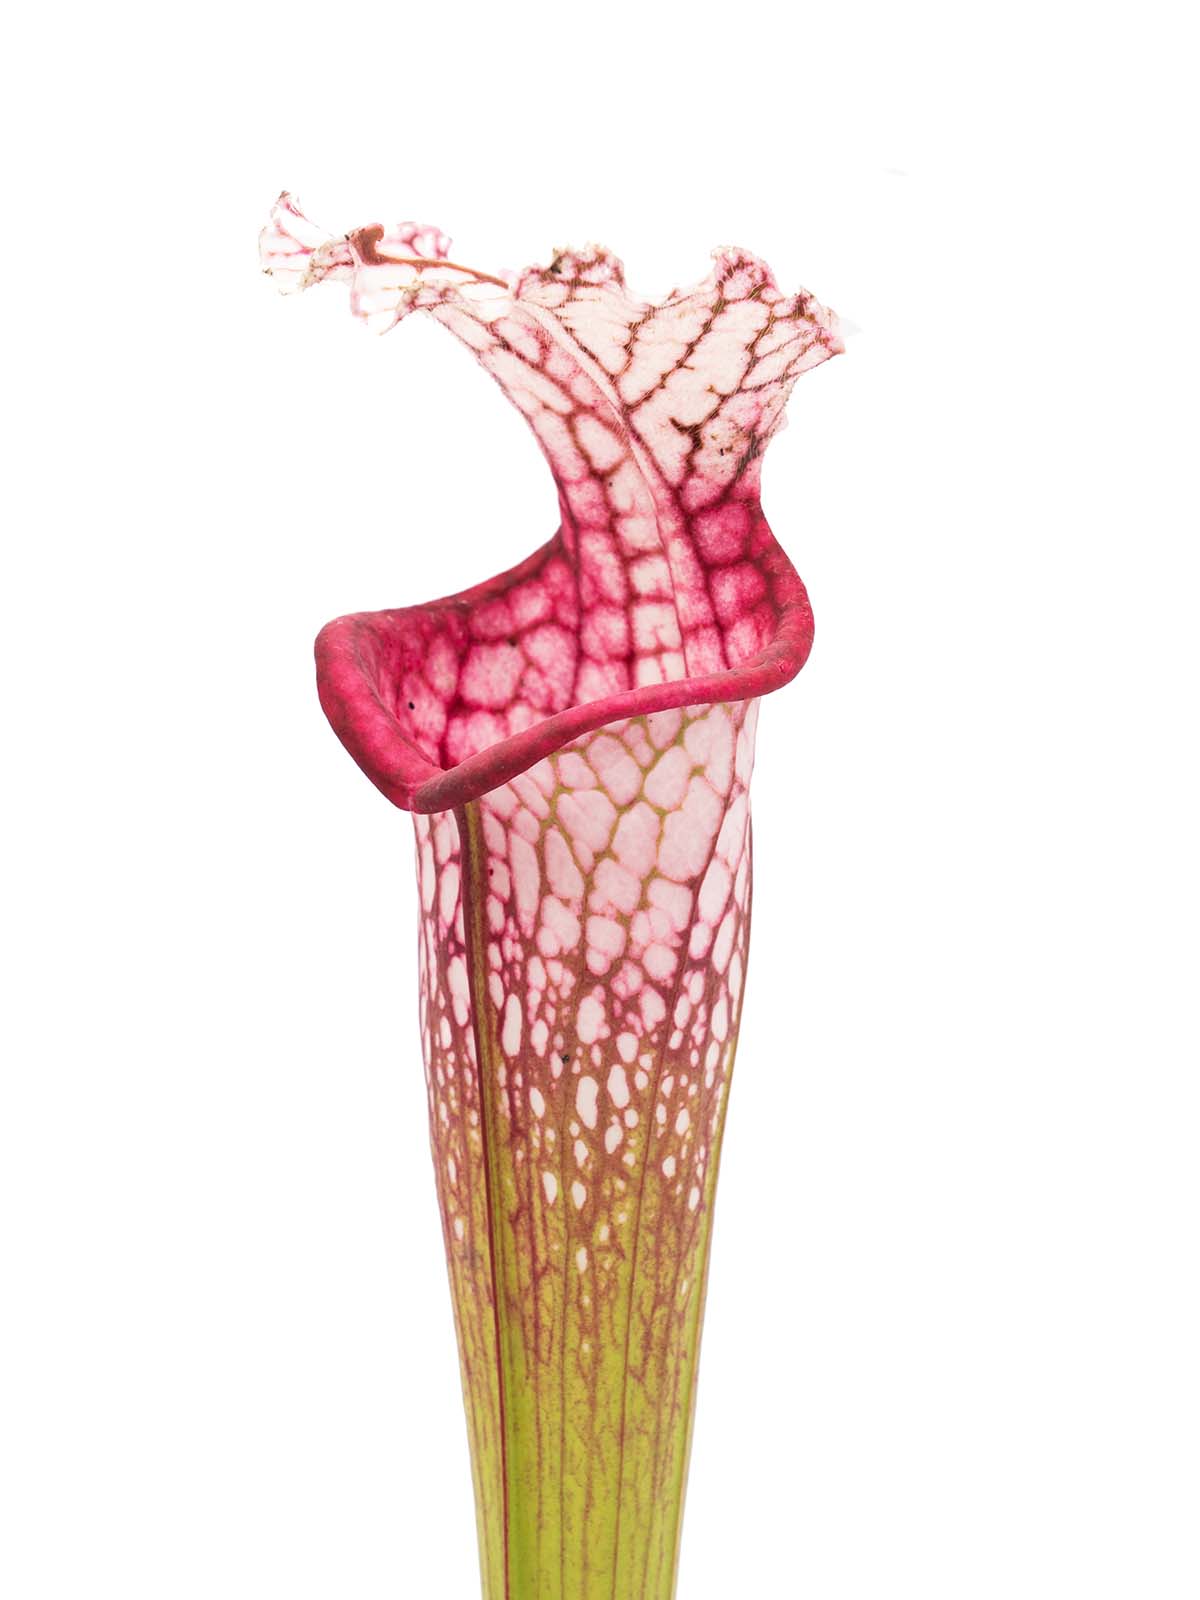 Sarracenia leucophylla - big pink lid